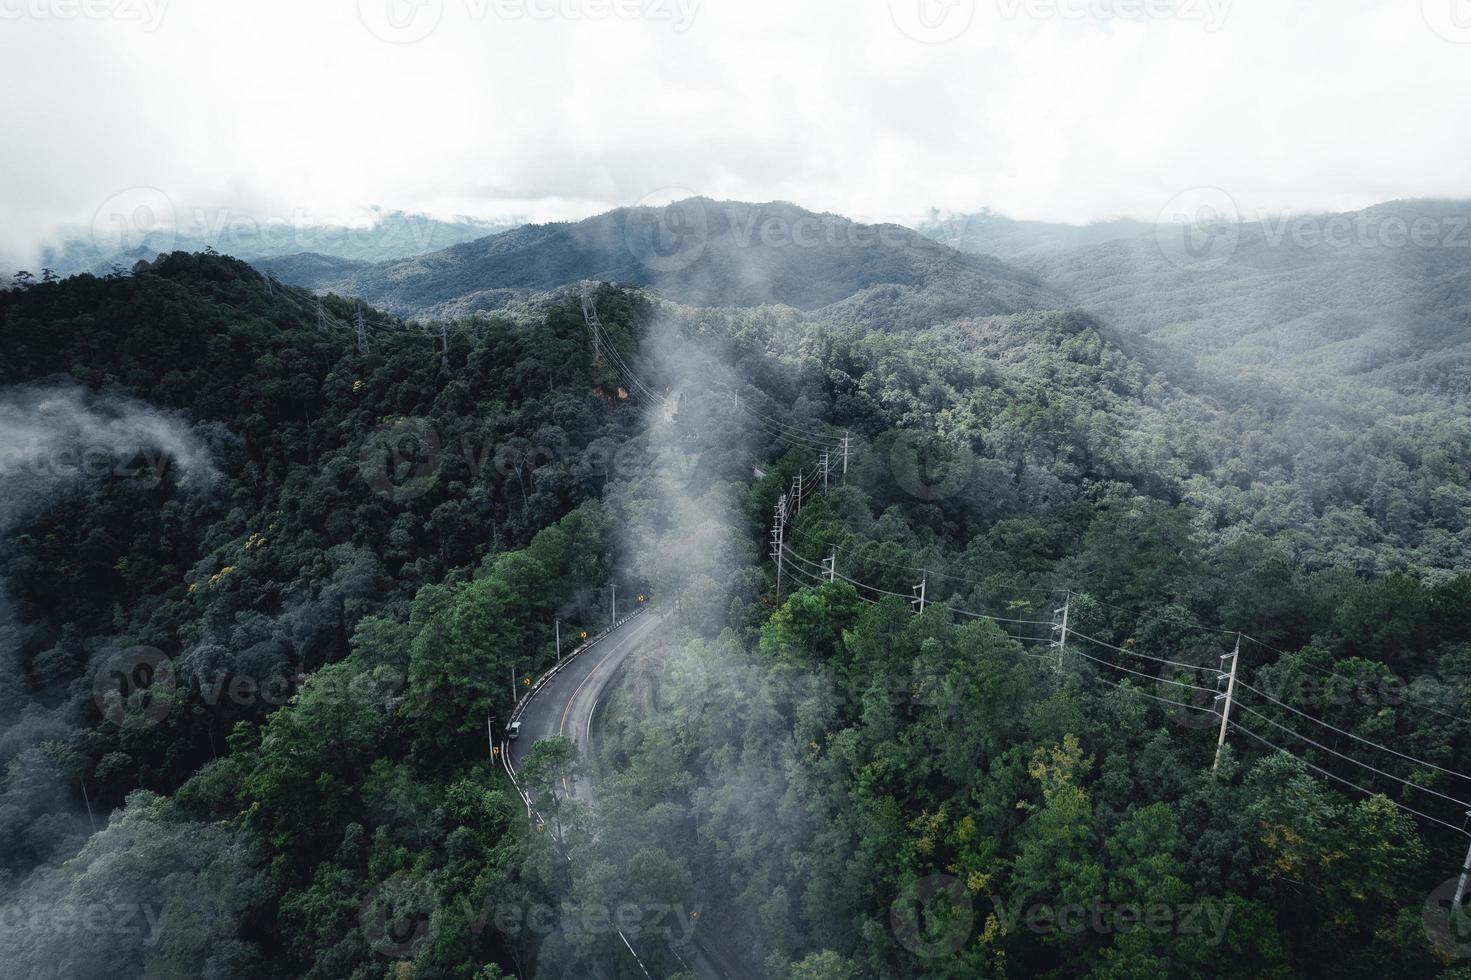 strada nella foresta stagione delle piogge natura alberi e viaggio nella nebbia foto